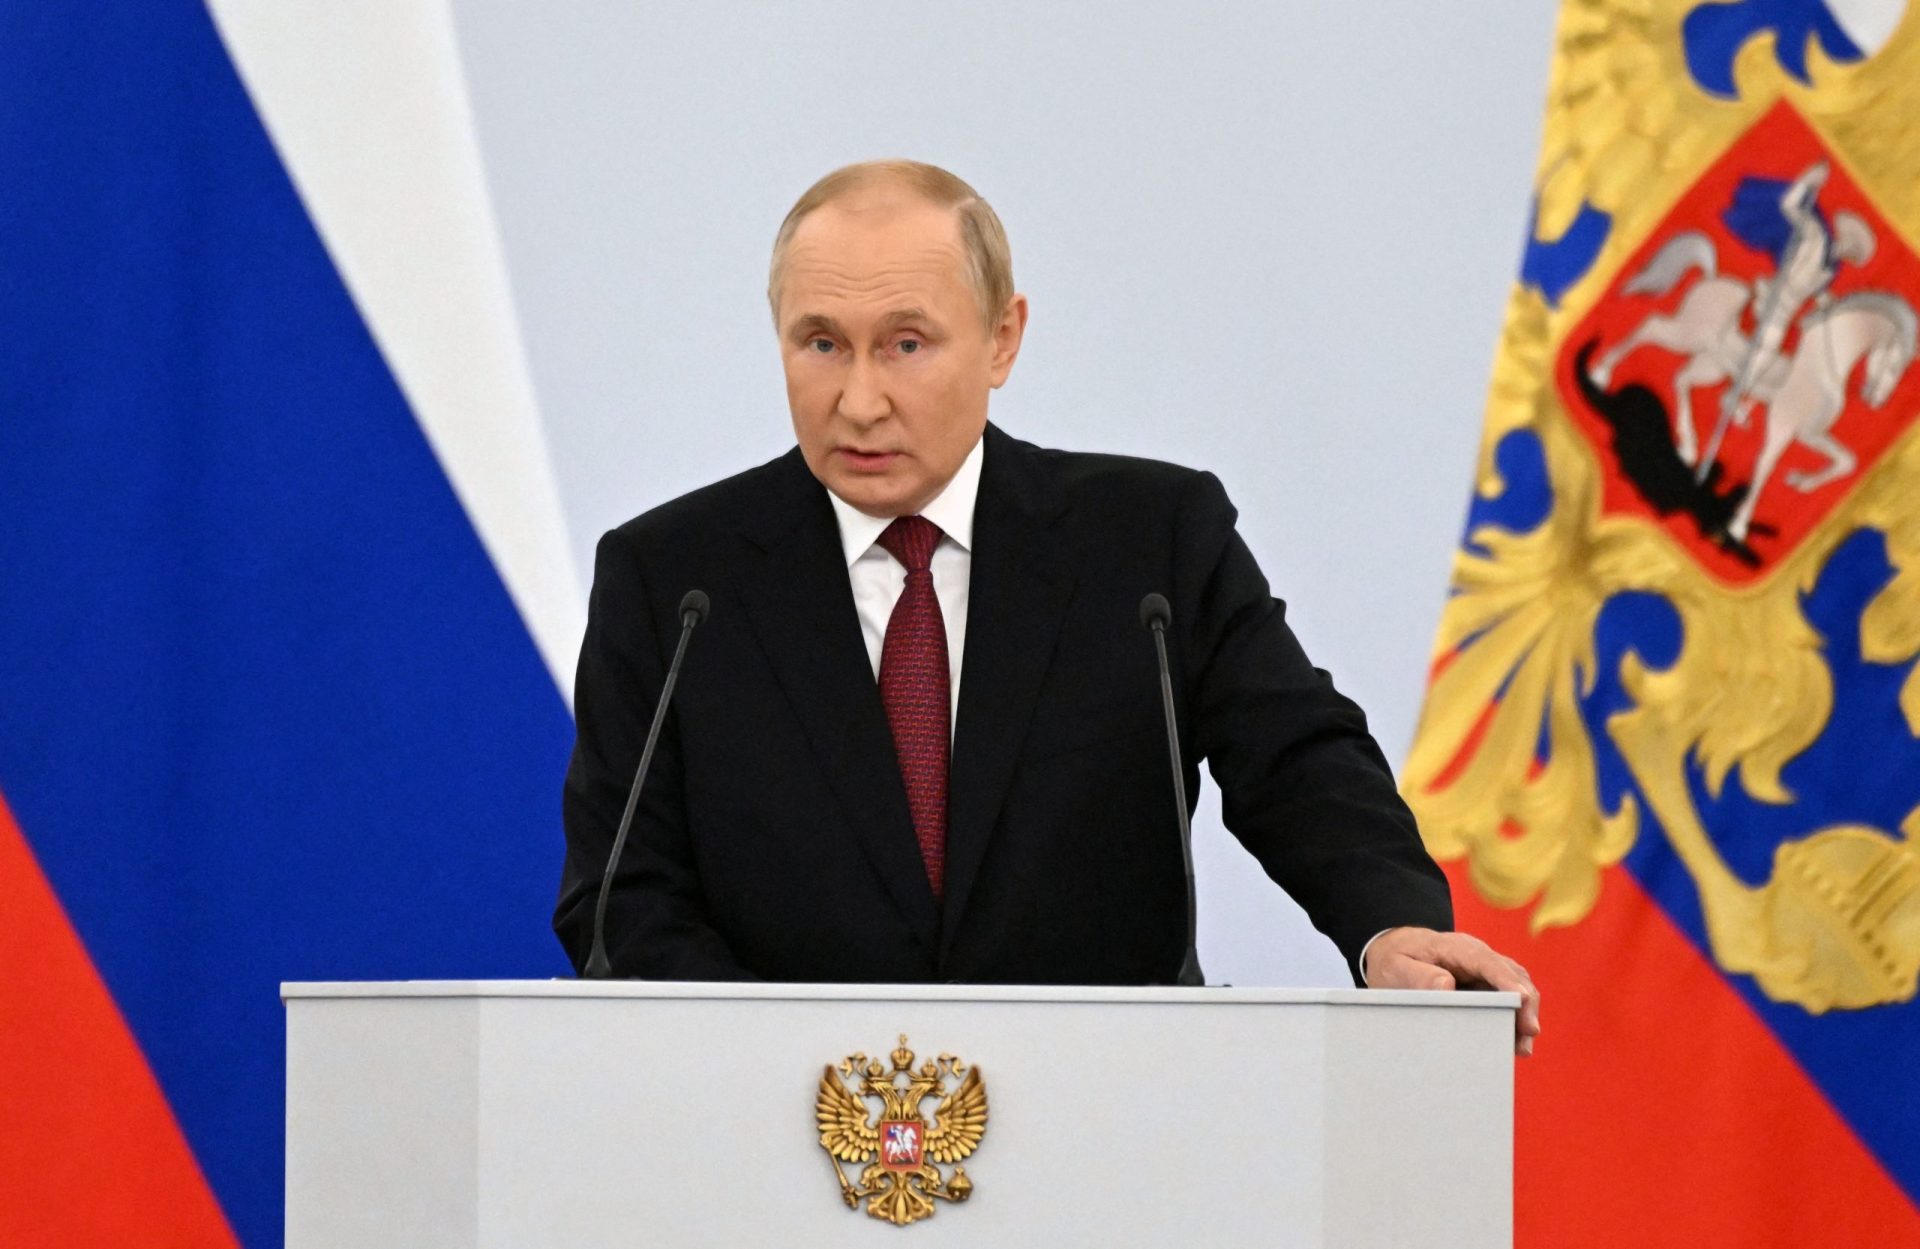 “O povo fez a sua escolha”. Putin formaliza anexação de territórios ucranianos